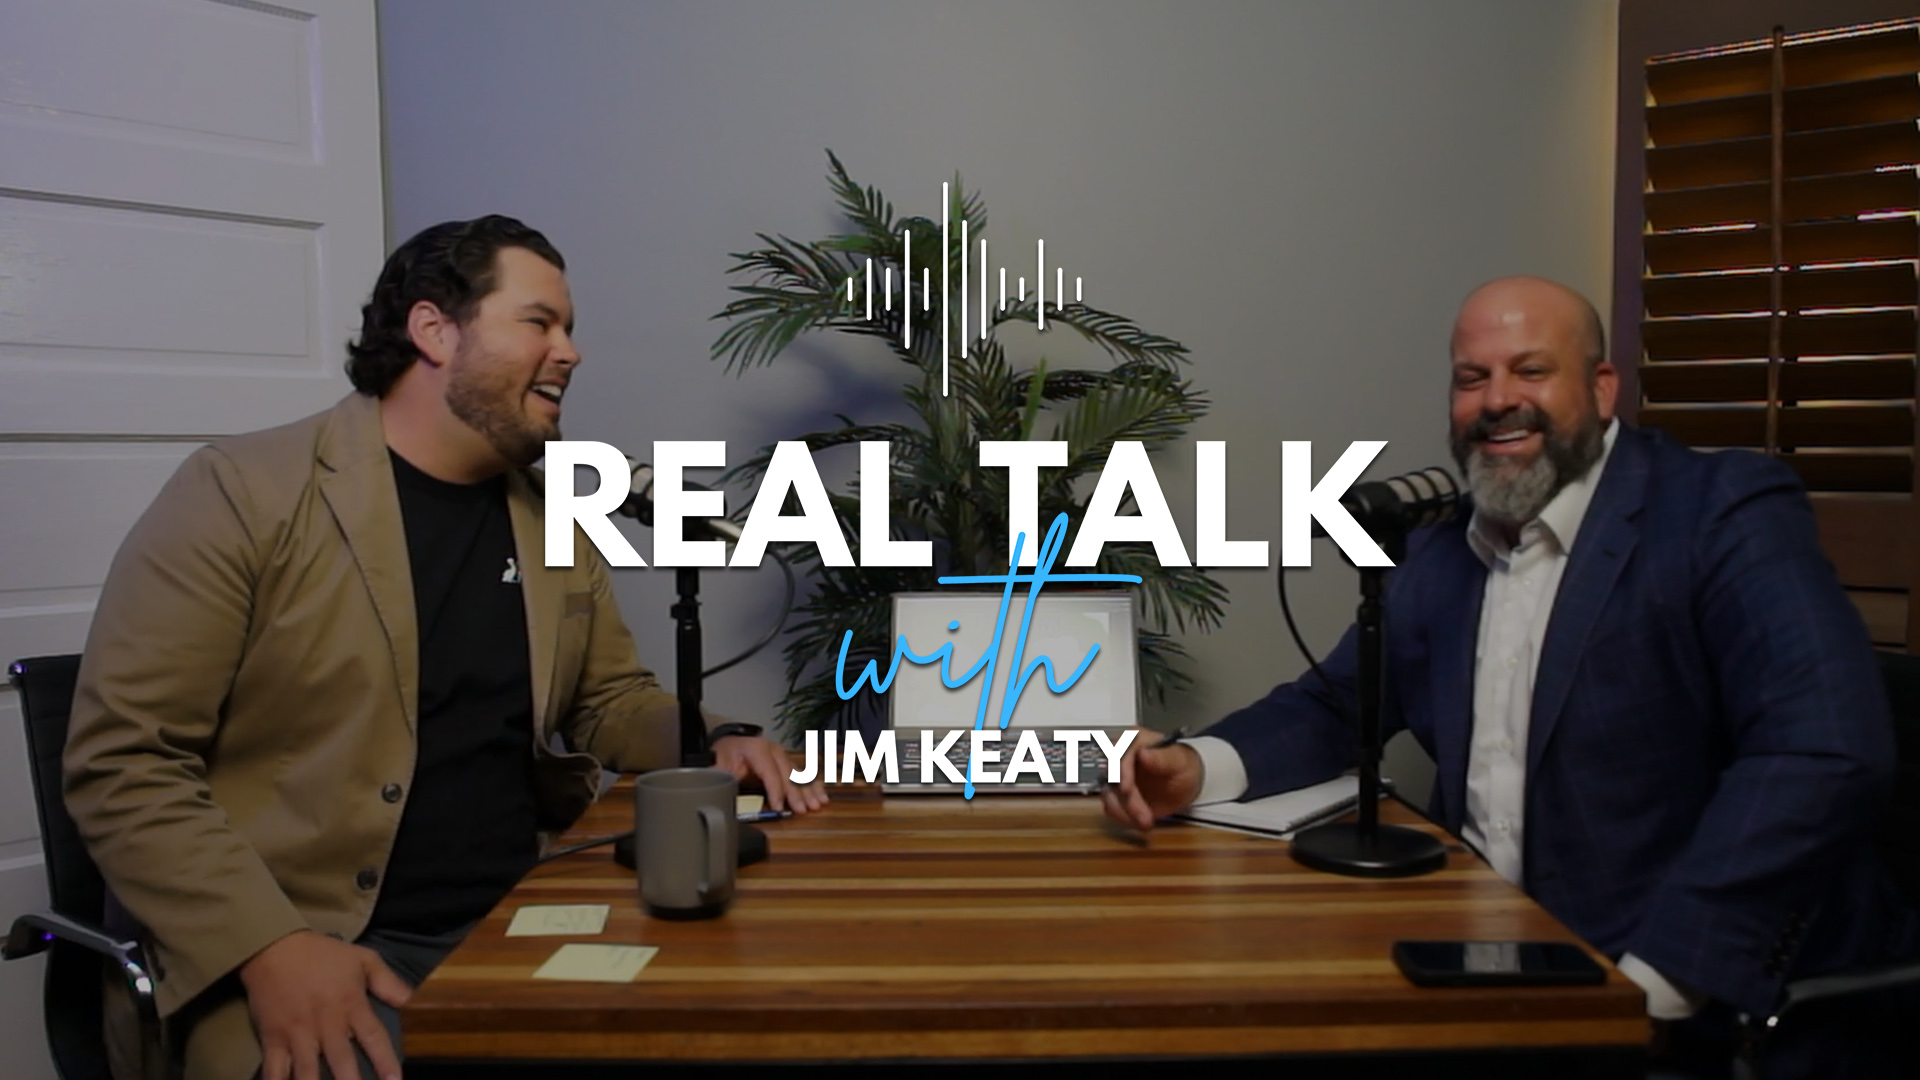 REAL TALK #003 With Jim Keaty | Kevin Jones